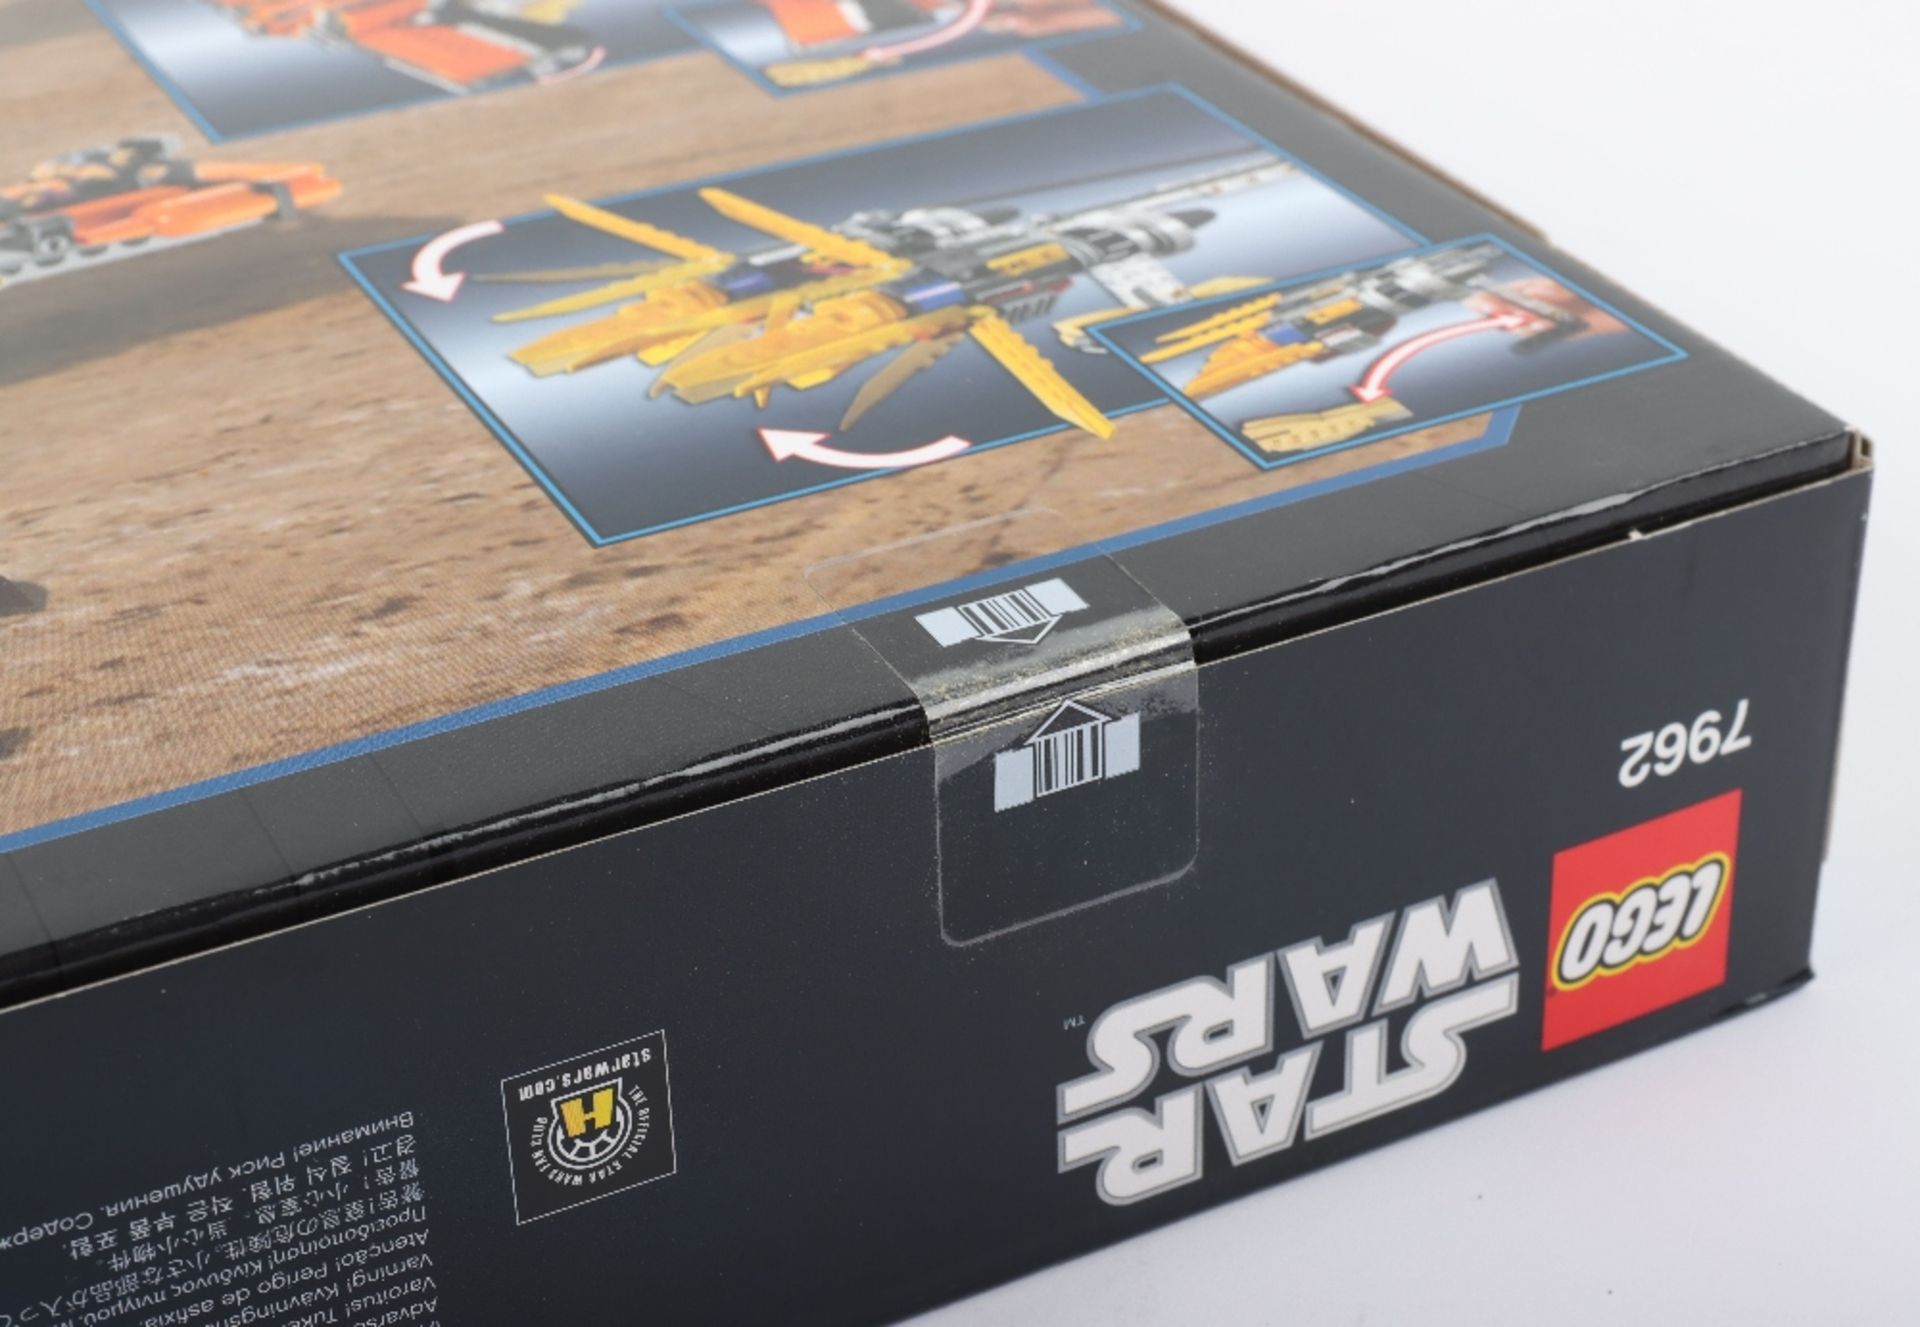 Lego Star Wars 7962 Anakin’s & Sebulba’s Podracers sealed boxed set - Image 6 of 7